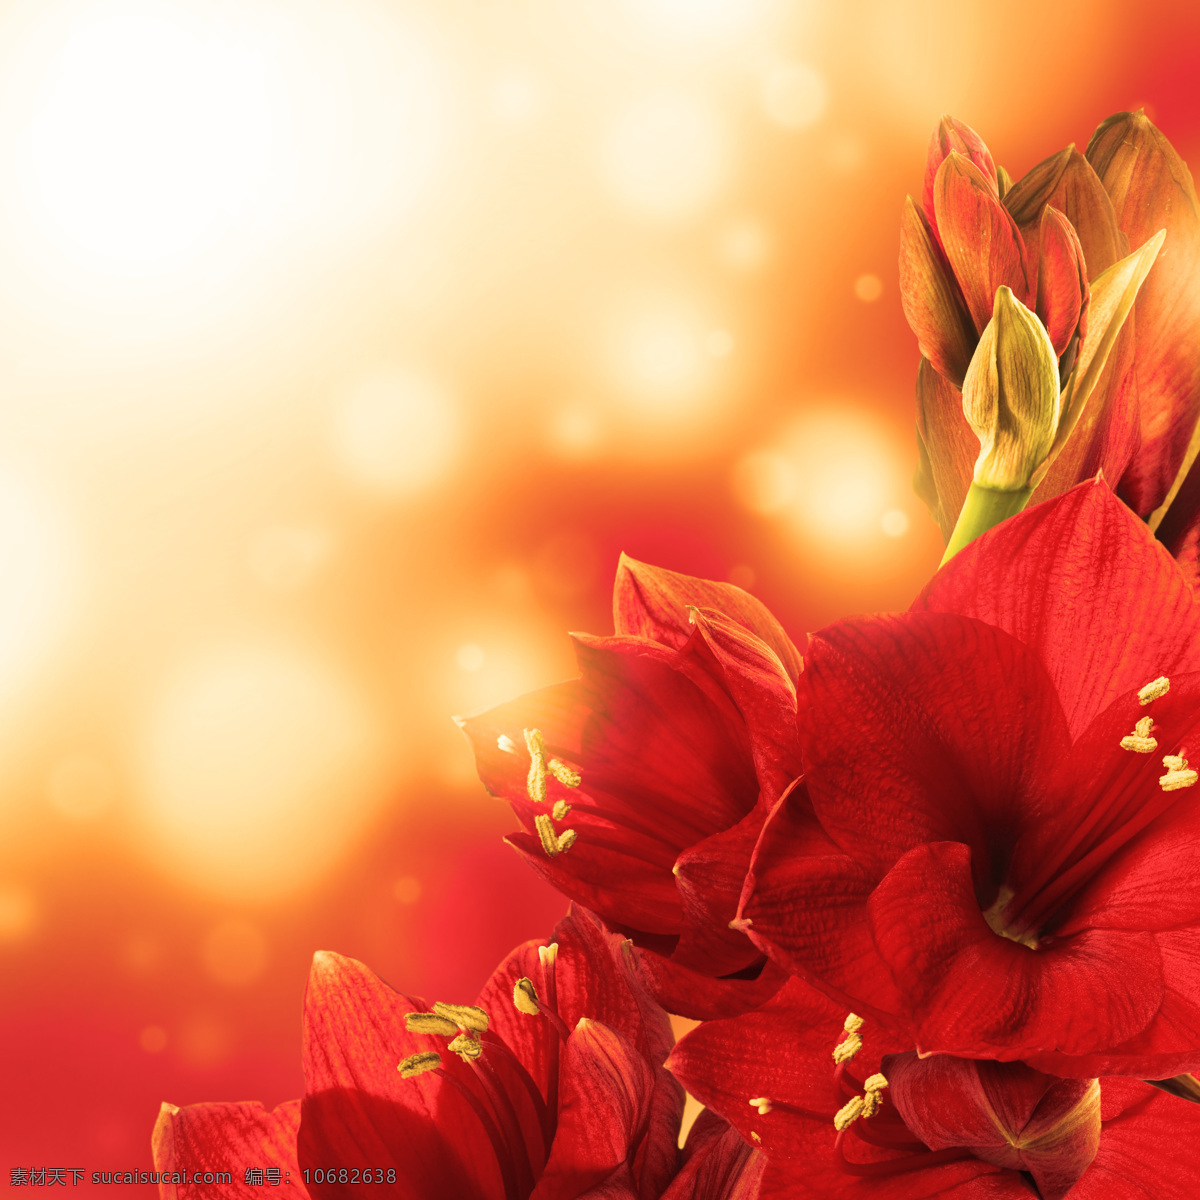 梦幻 光斑 红色 鲜花 背景 红色鲜花 鲜花背景 花朵 花卉 梦幻光斑 梦幻背景 漂亮鲜花 美丽鲜花 底纹边框 花草树木 生物世界